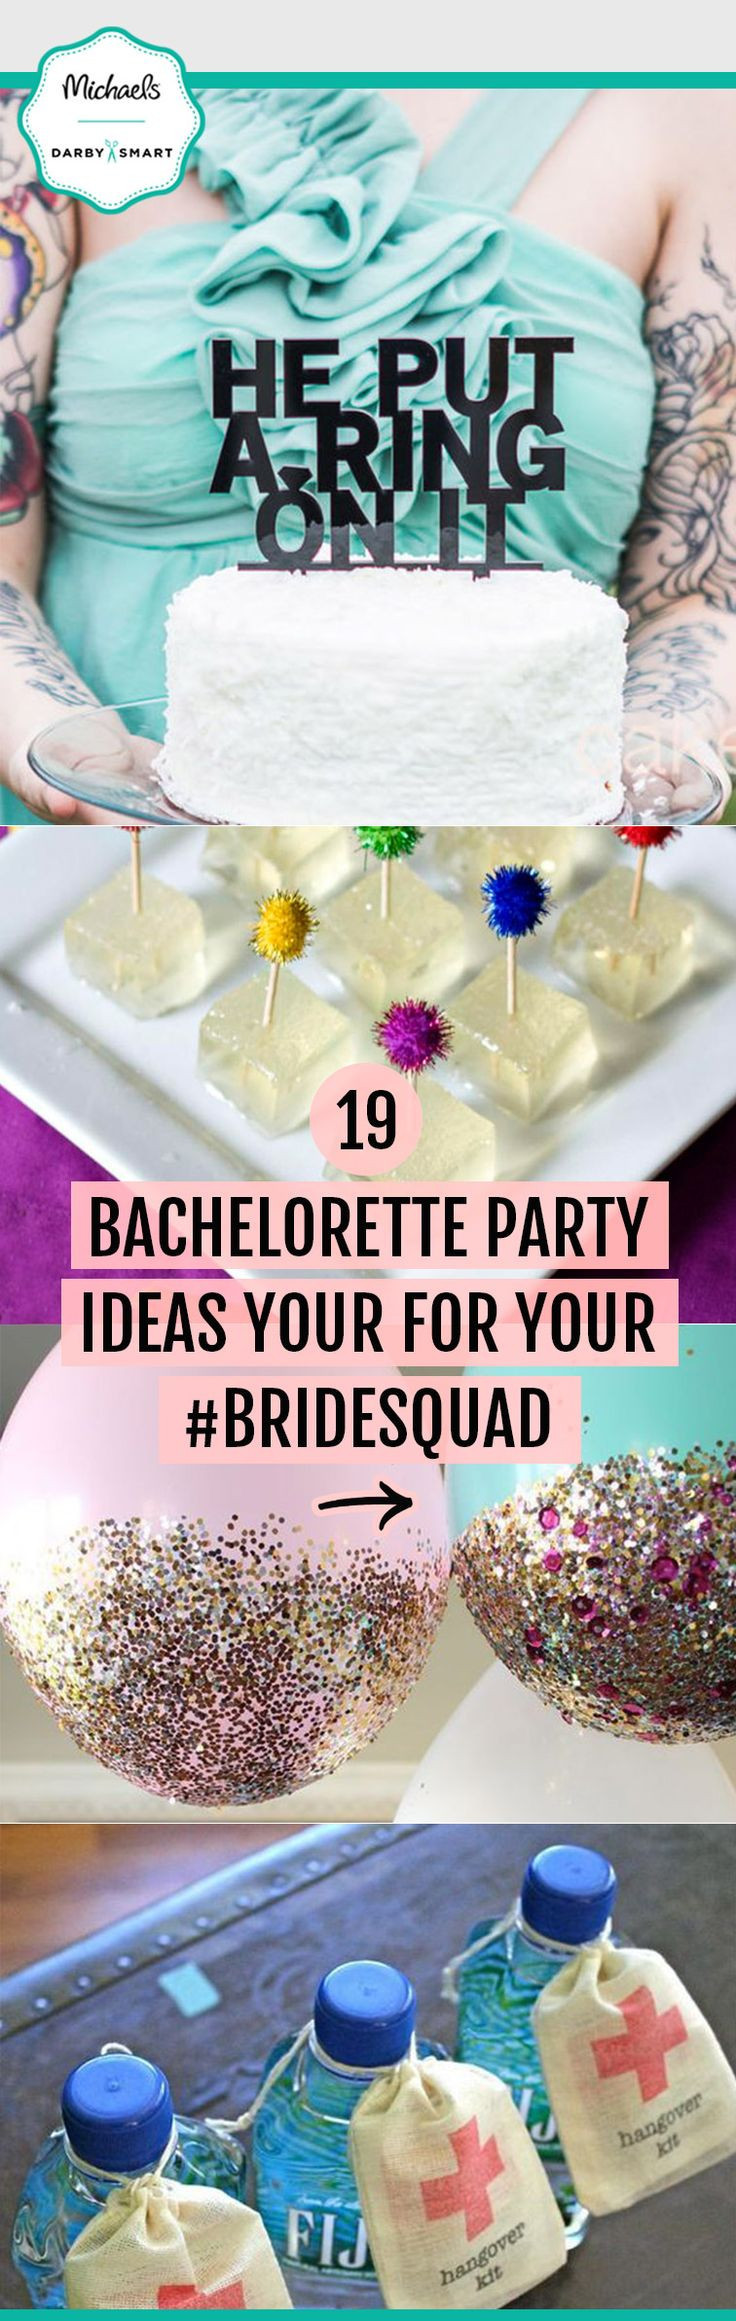 Bachelorette Party Ideas In Ohio
 22 Best Ideas Bachelorette Party Ideas In Ohio Home